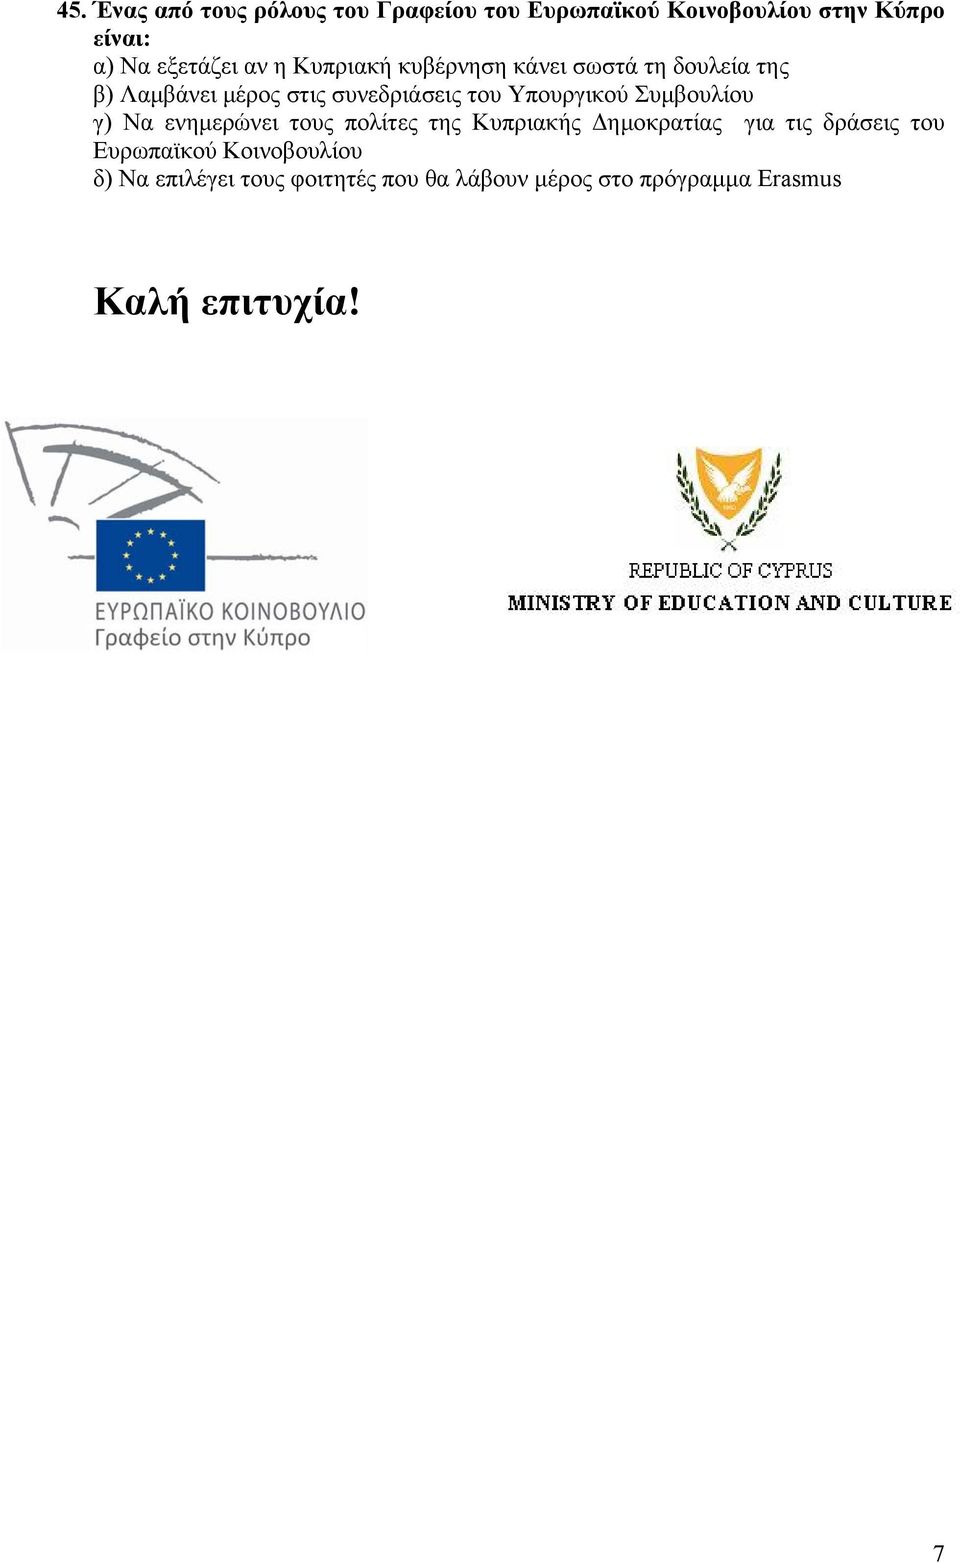 Υπουργικού Συμβουλίου γ) Να ενημερώνει τους πολίτες της Κυπριακής Δημοκρατίας για τις δράσεις του